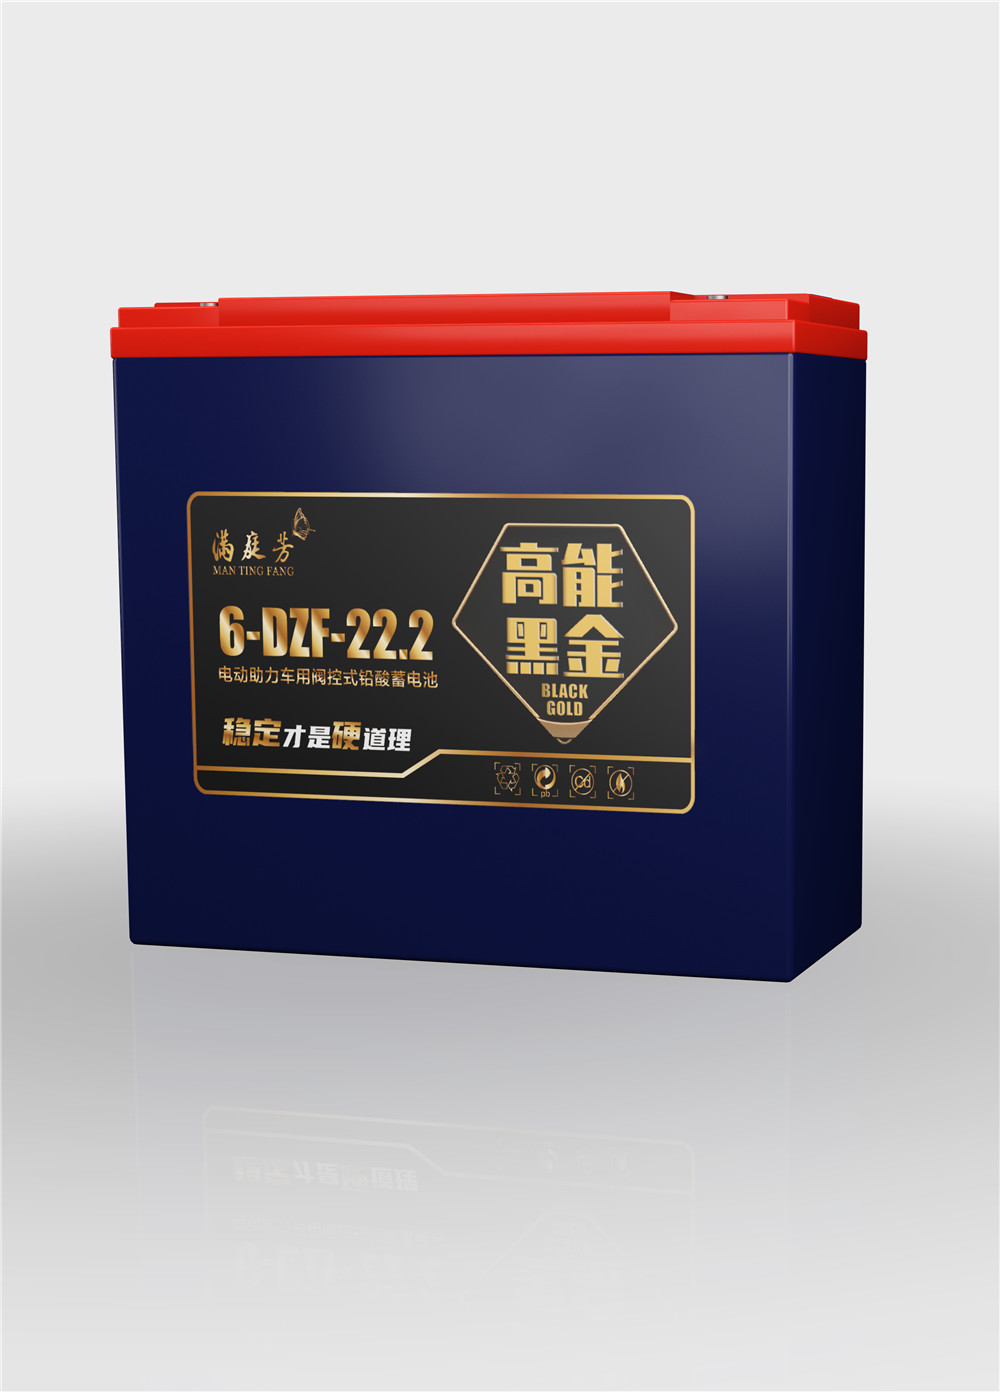 mantingfang black gold series 6-DZF-22.2